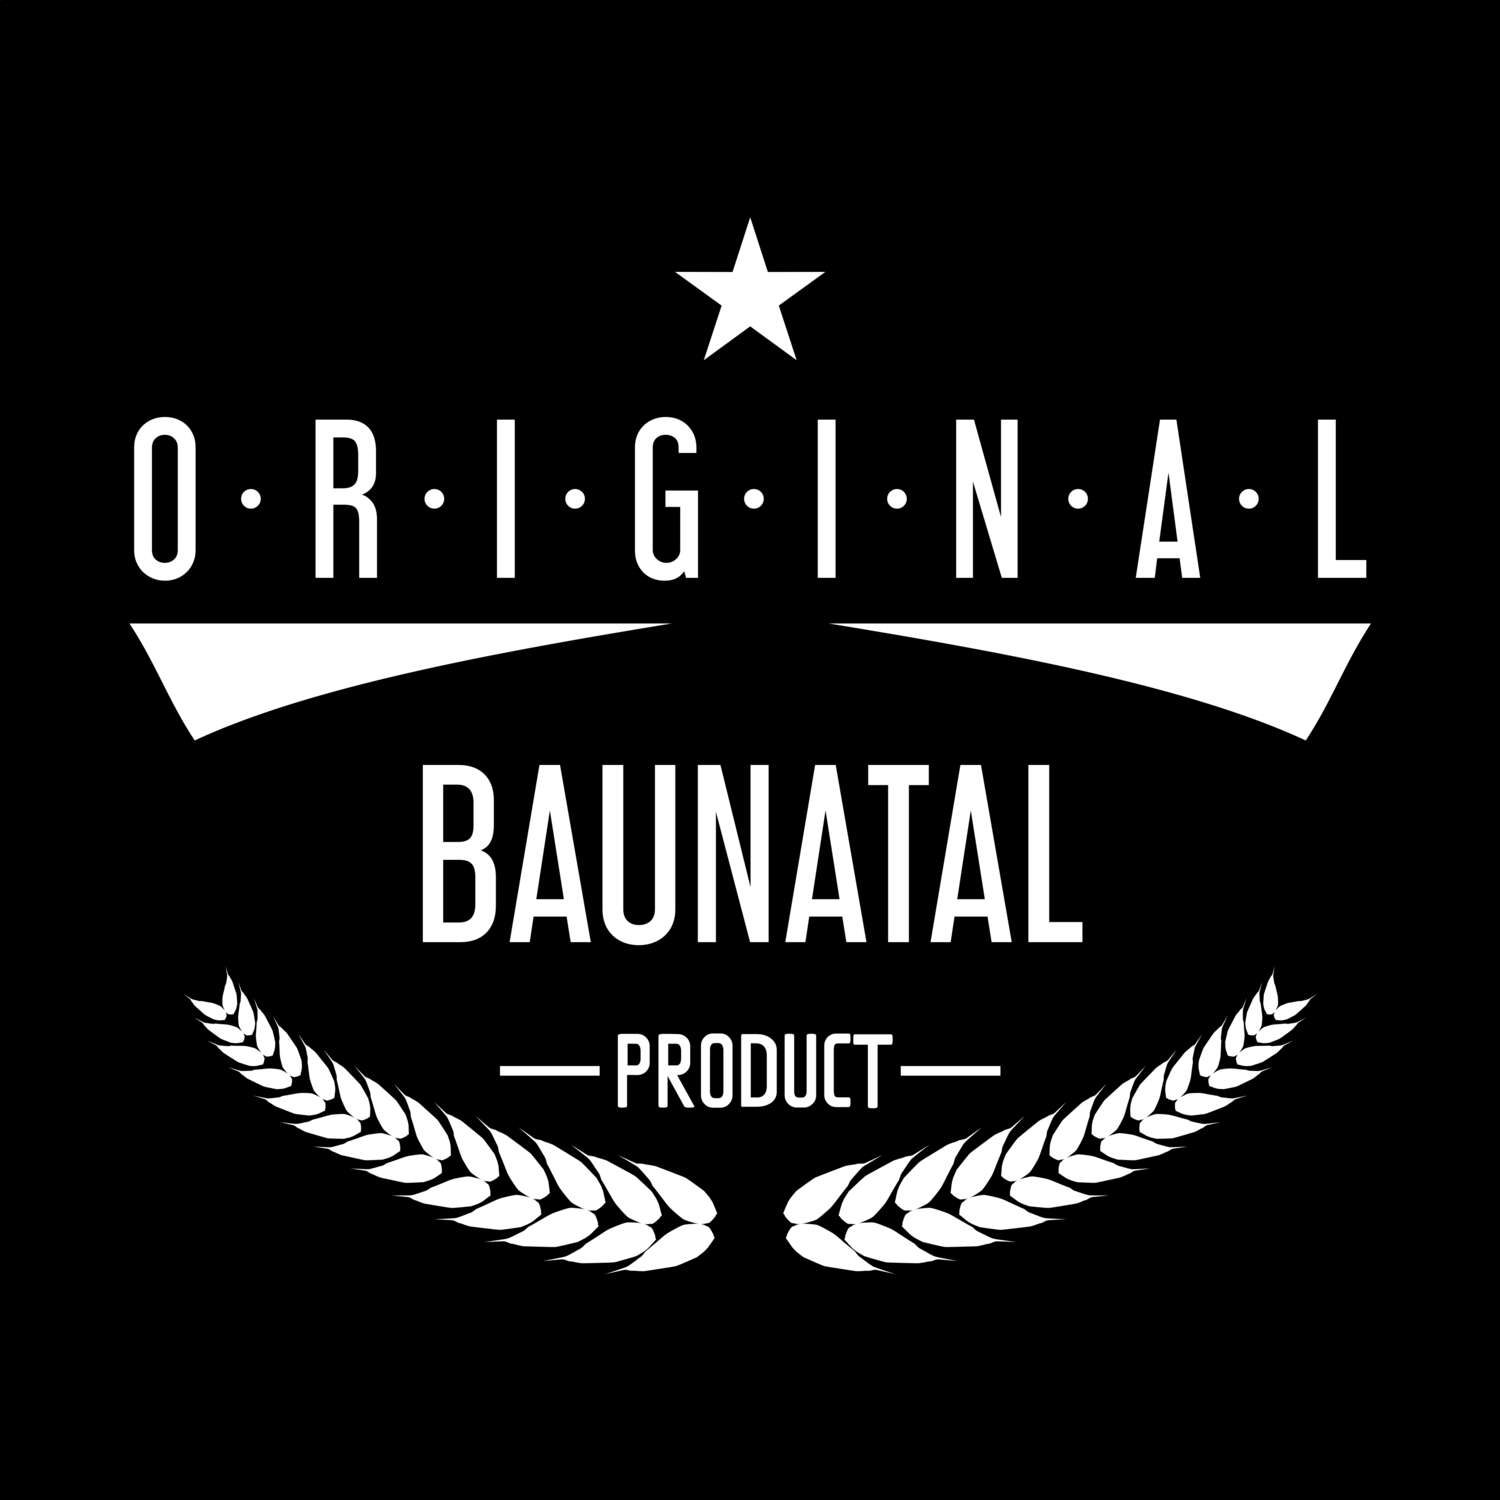 Baunatal T-Shirt »Original Product«